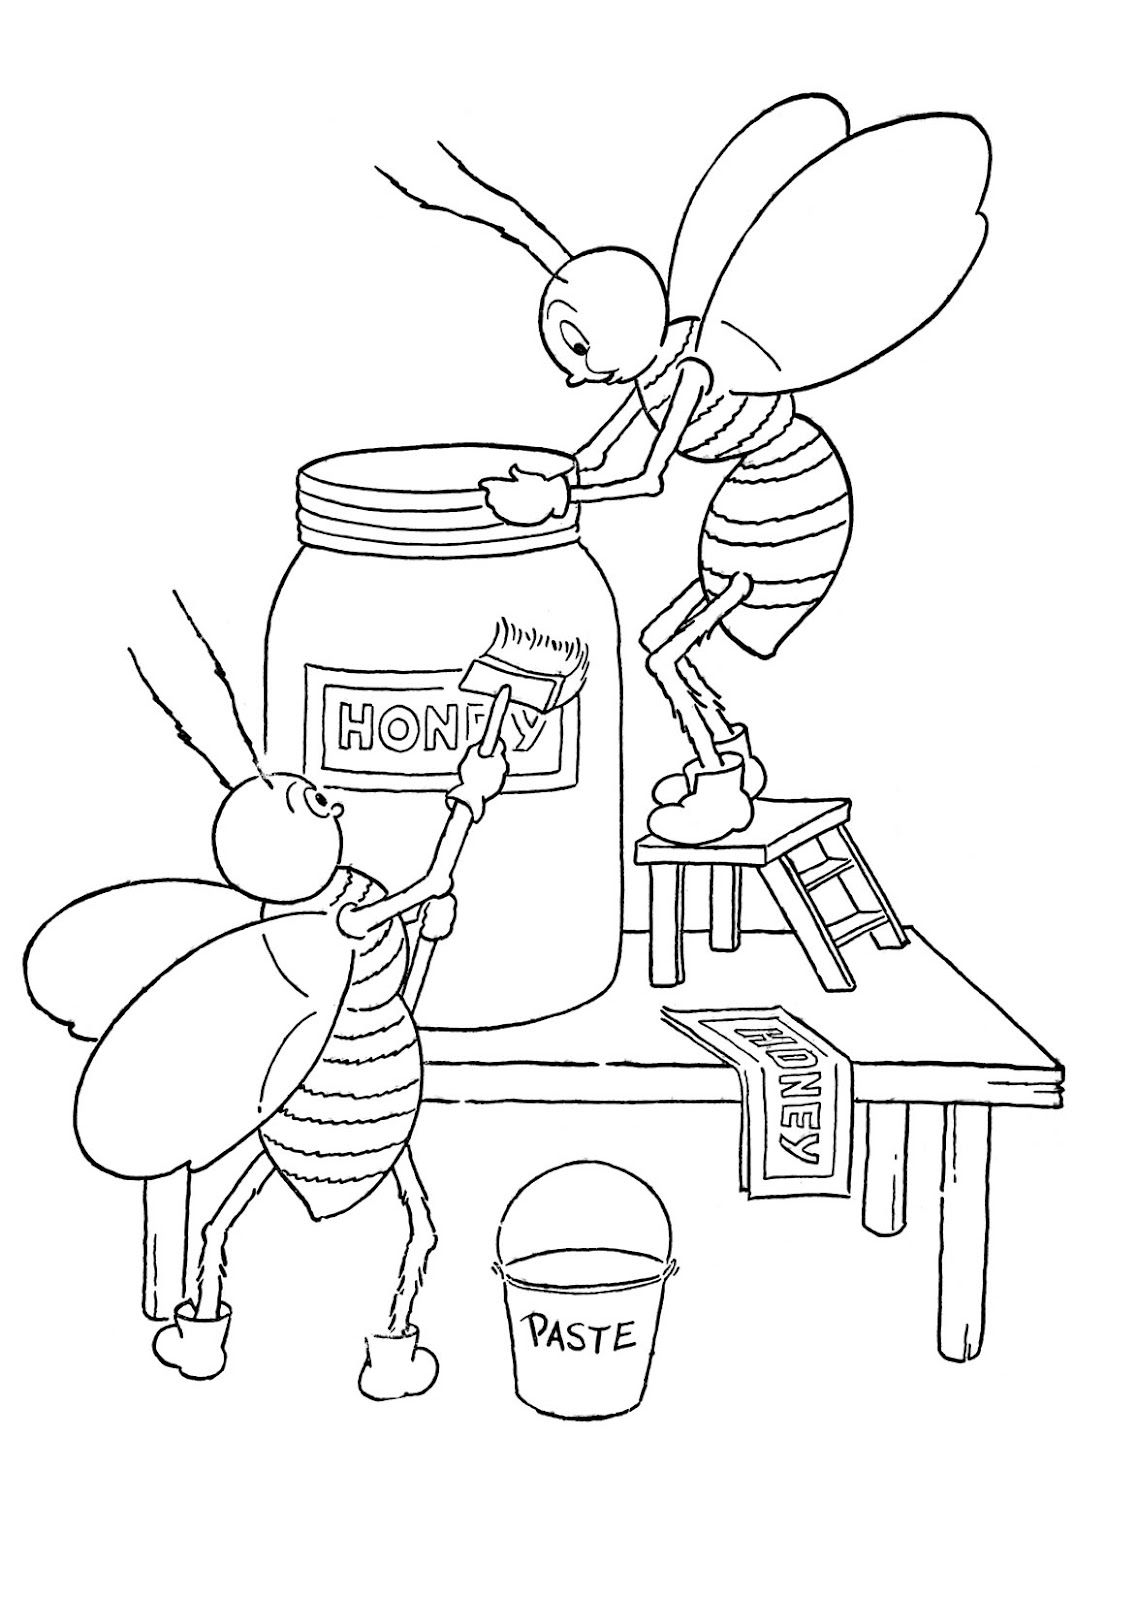 Tranh tô màu sắc mang đến nhỏ bé chú ong đang được thao tác làm việc tô điểm hũ mật